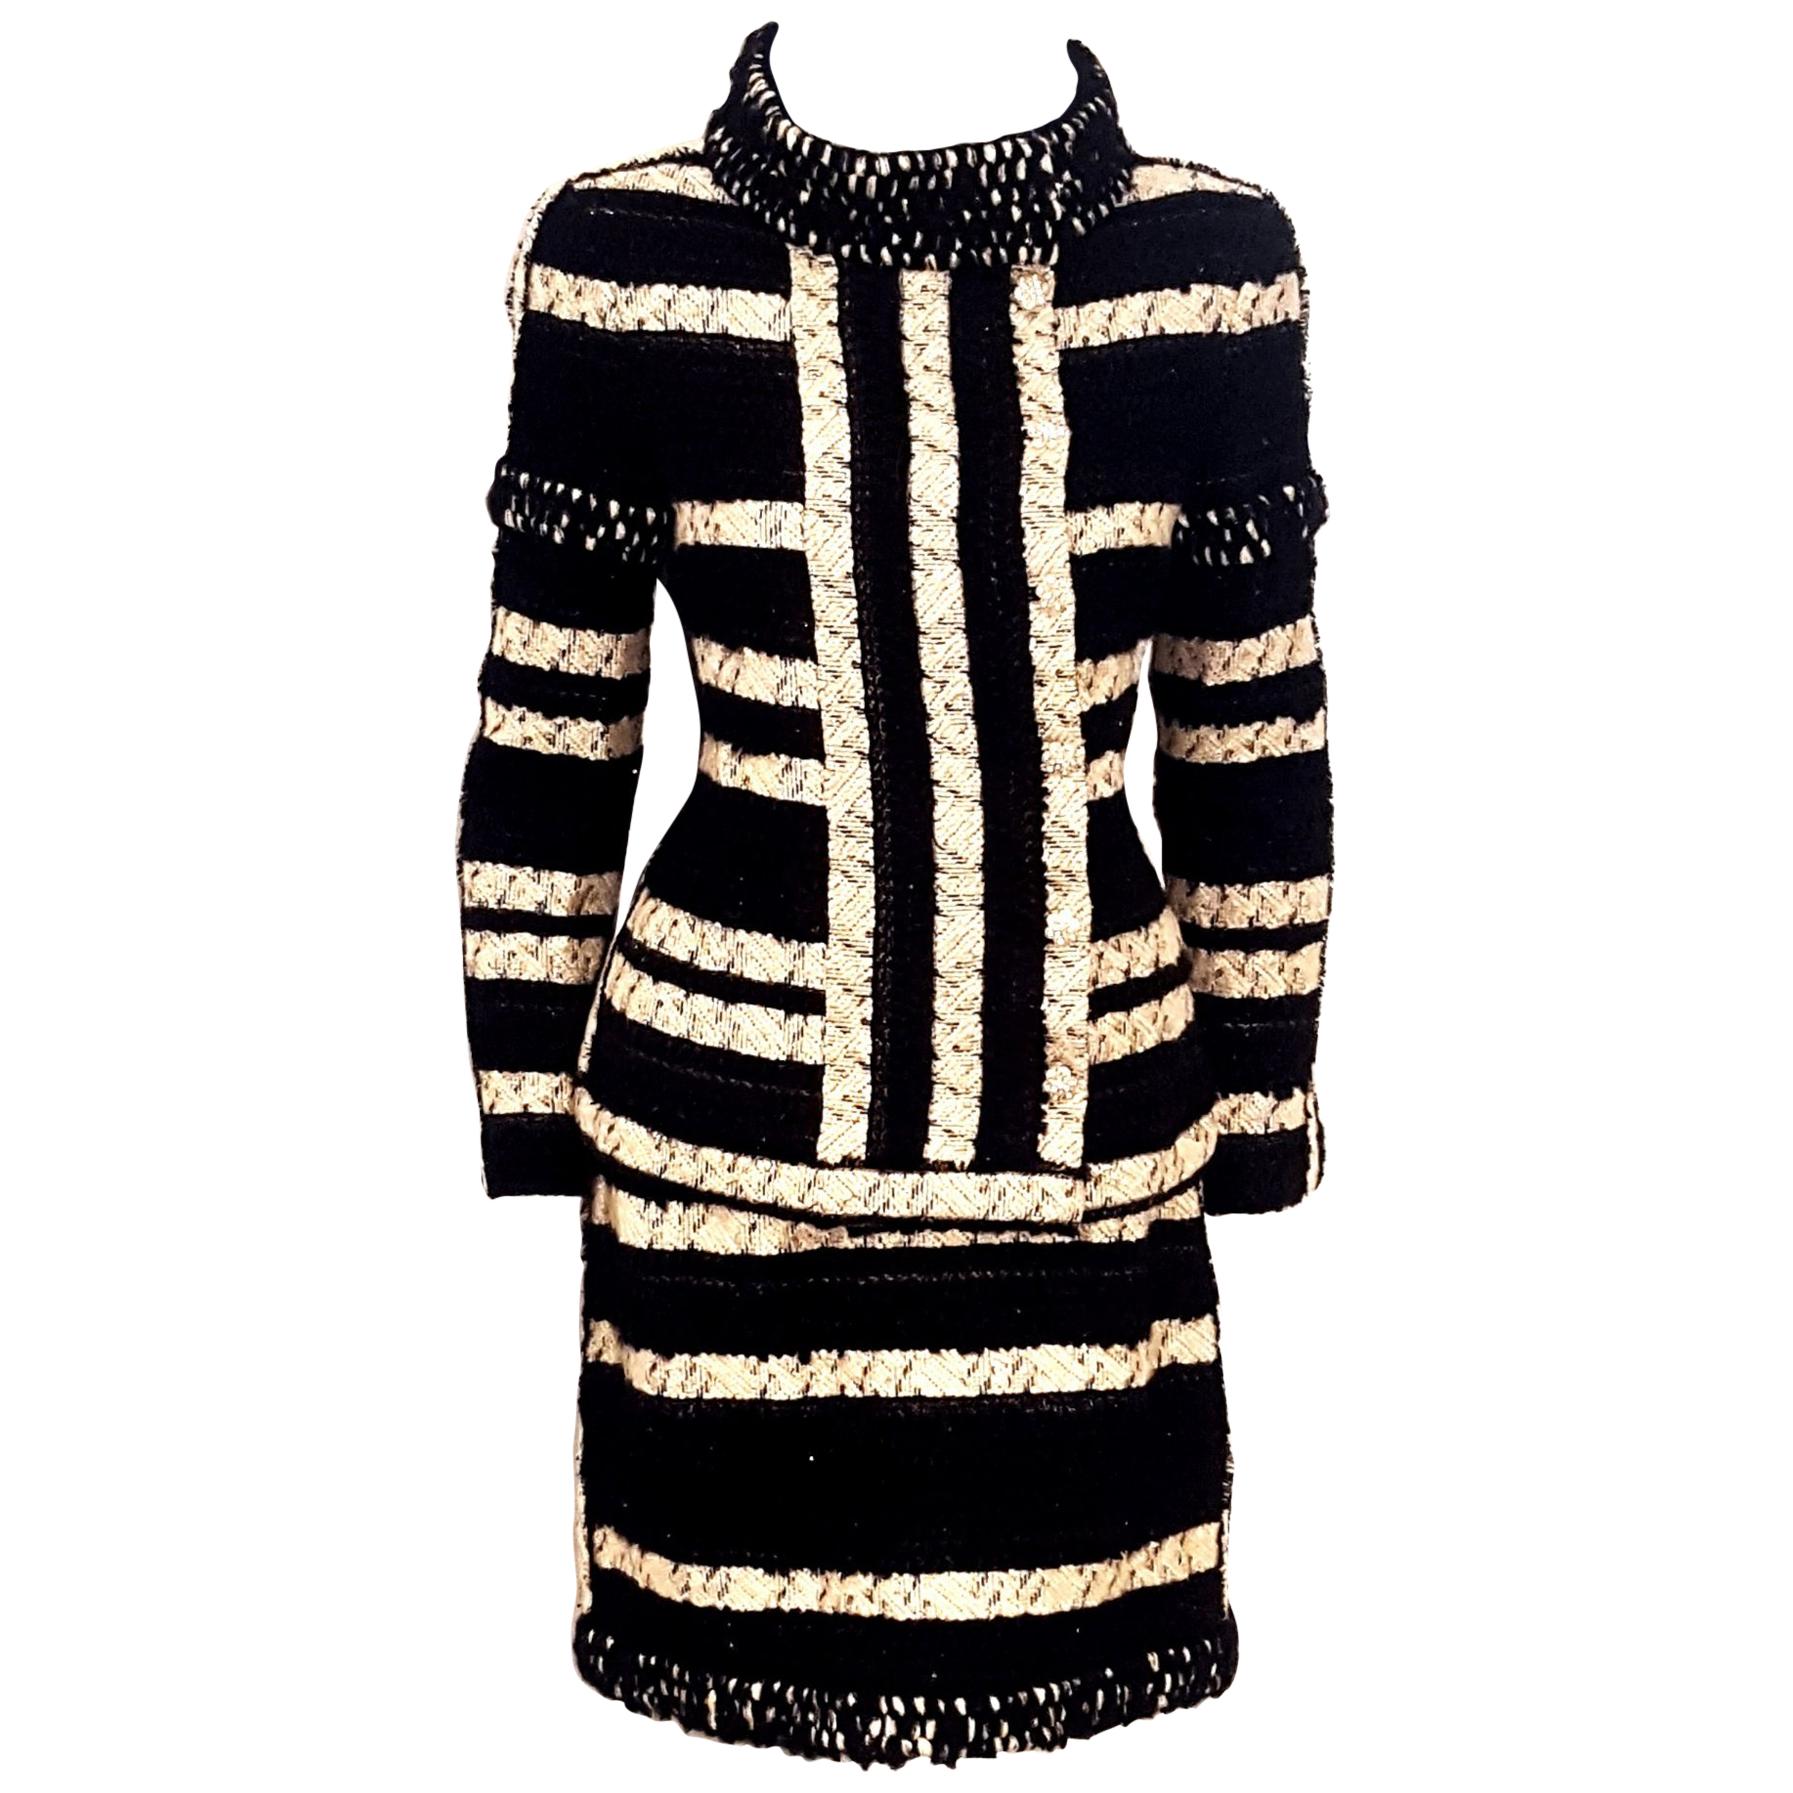 Chanel Black and Beige Stripe Design Skirt Suit W/ Metallic Threads Autumn 2009 